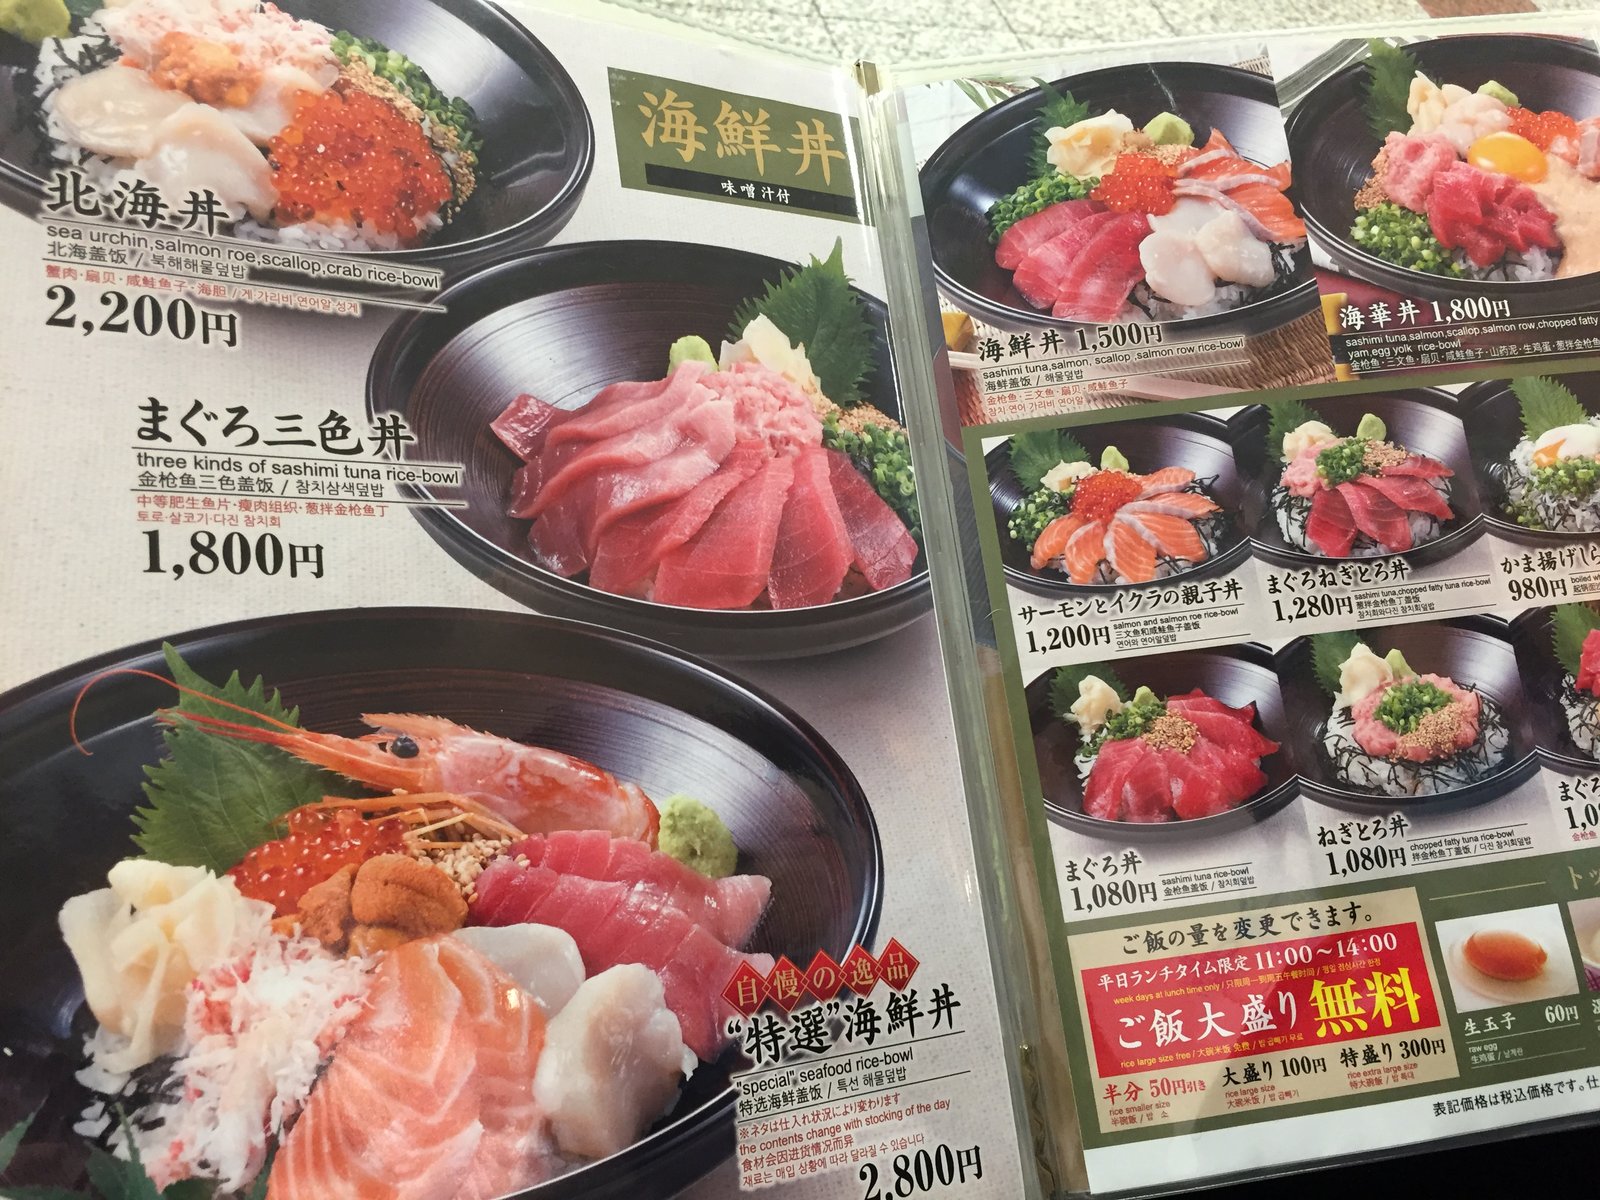 99 満席 新宿駅西口メトロ食堂街 笹陣 の高級海鮮丼は 納得の味でした Playlife プレイライフ